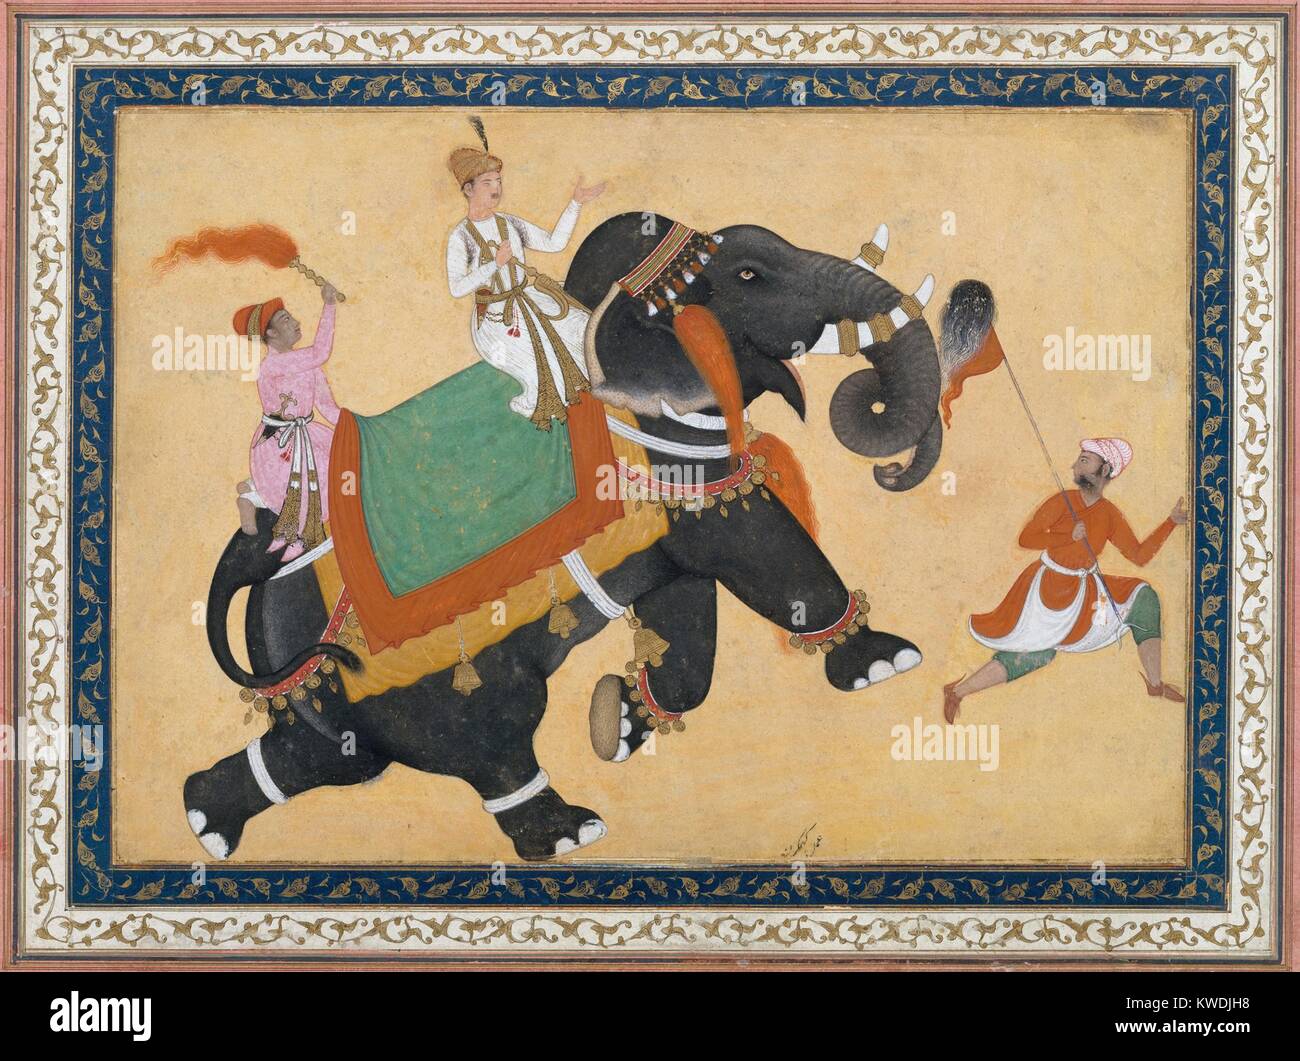 Prinz Ritt auf einem Elefanten, von Khem Karan, 16th-17th c., Indische, Mughal Aquarell Malerei. Elefanten wurden geschätzt und oft Gegenstand von Mughal Kunstwerke. Die Künstlerin arbeitete im Gericht von Akbar dem Großen, der dritte Mughal Kaiser, der von 1556 bis 1605 regierte (BSLOC 2017 16 27) Stockfoto